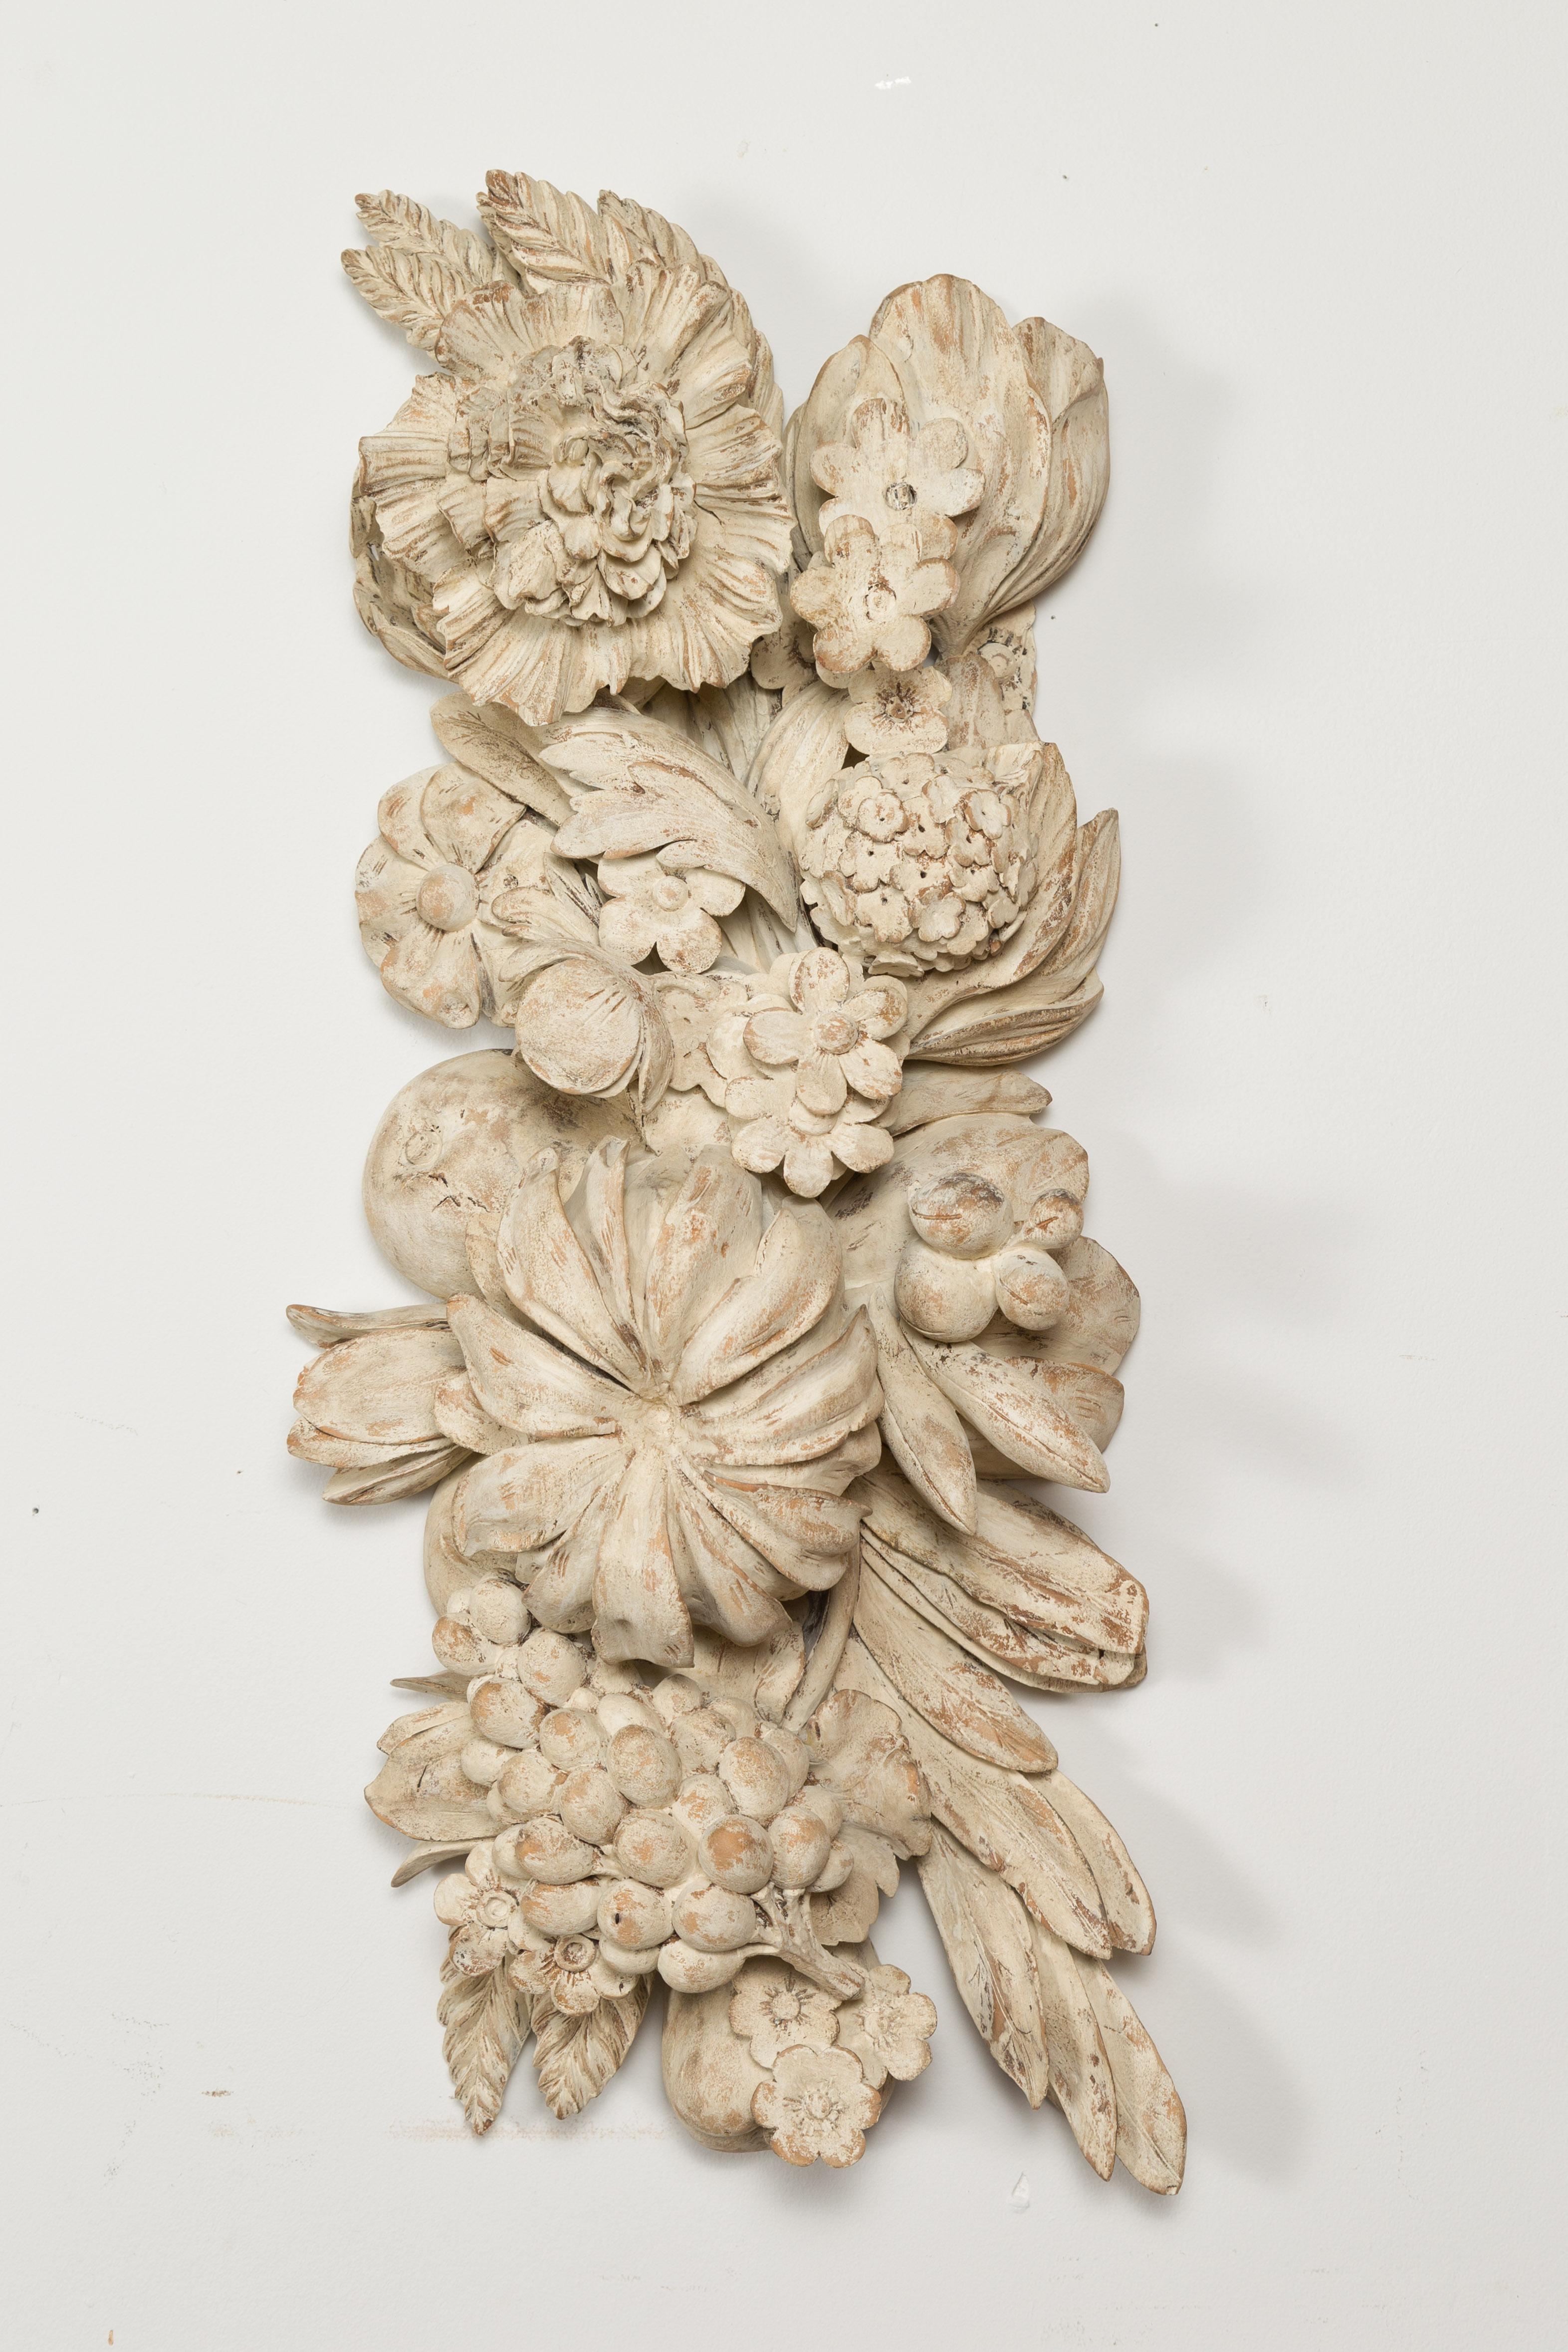 Fragment de bois sculpté italien du XIXe siècle, représentant de gros fruits et des fleurs. Créé en Italie au cours du XIXe siècle, ce fragment mural présente de grandes fleurs et des fruits sur des feuillages disposés dans une composition joyeuse.